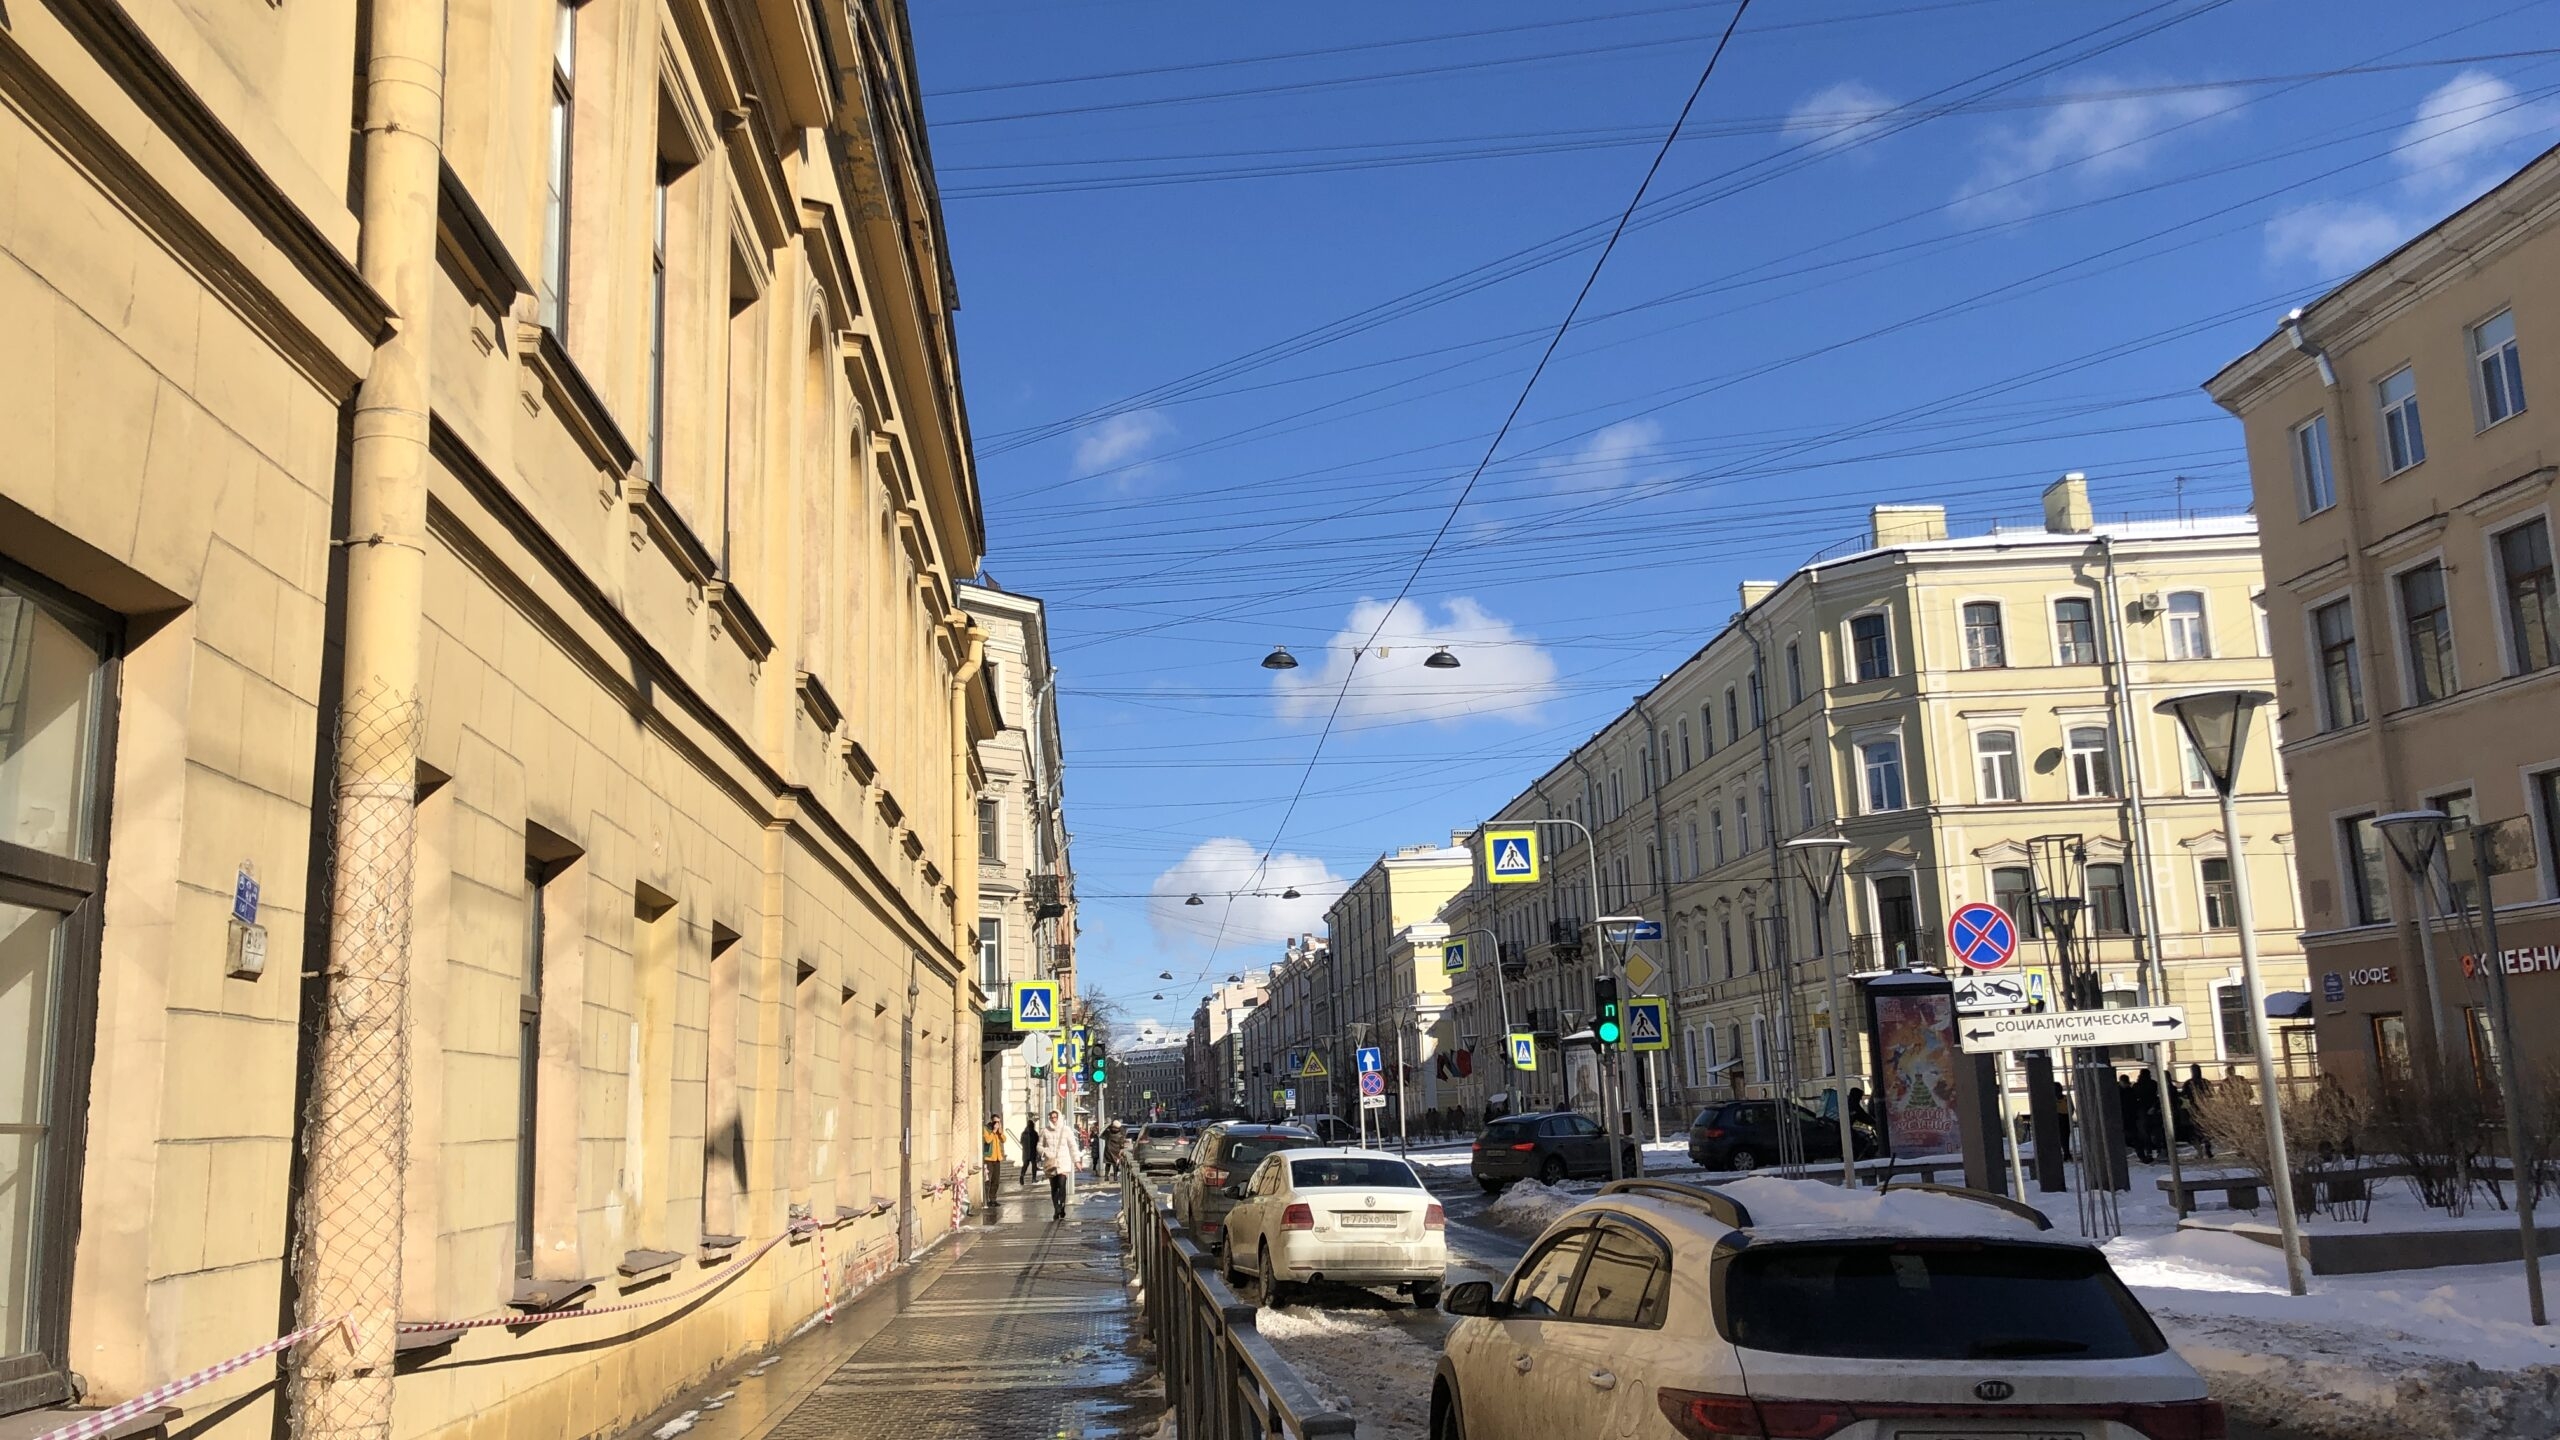 Колесов: после резкого похолодания в Петербург придет стабильно теплая погода